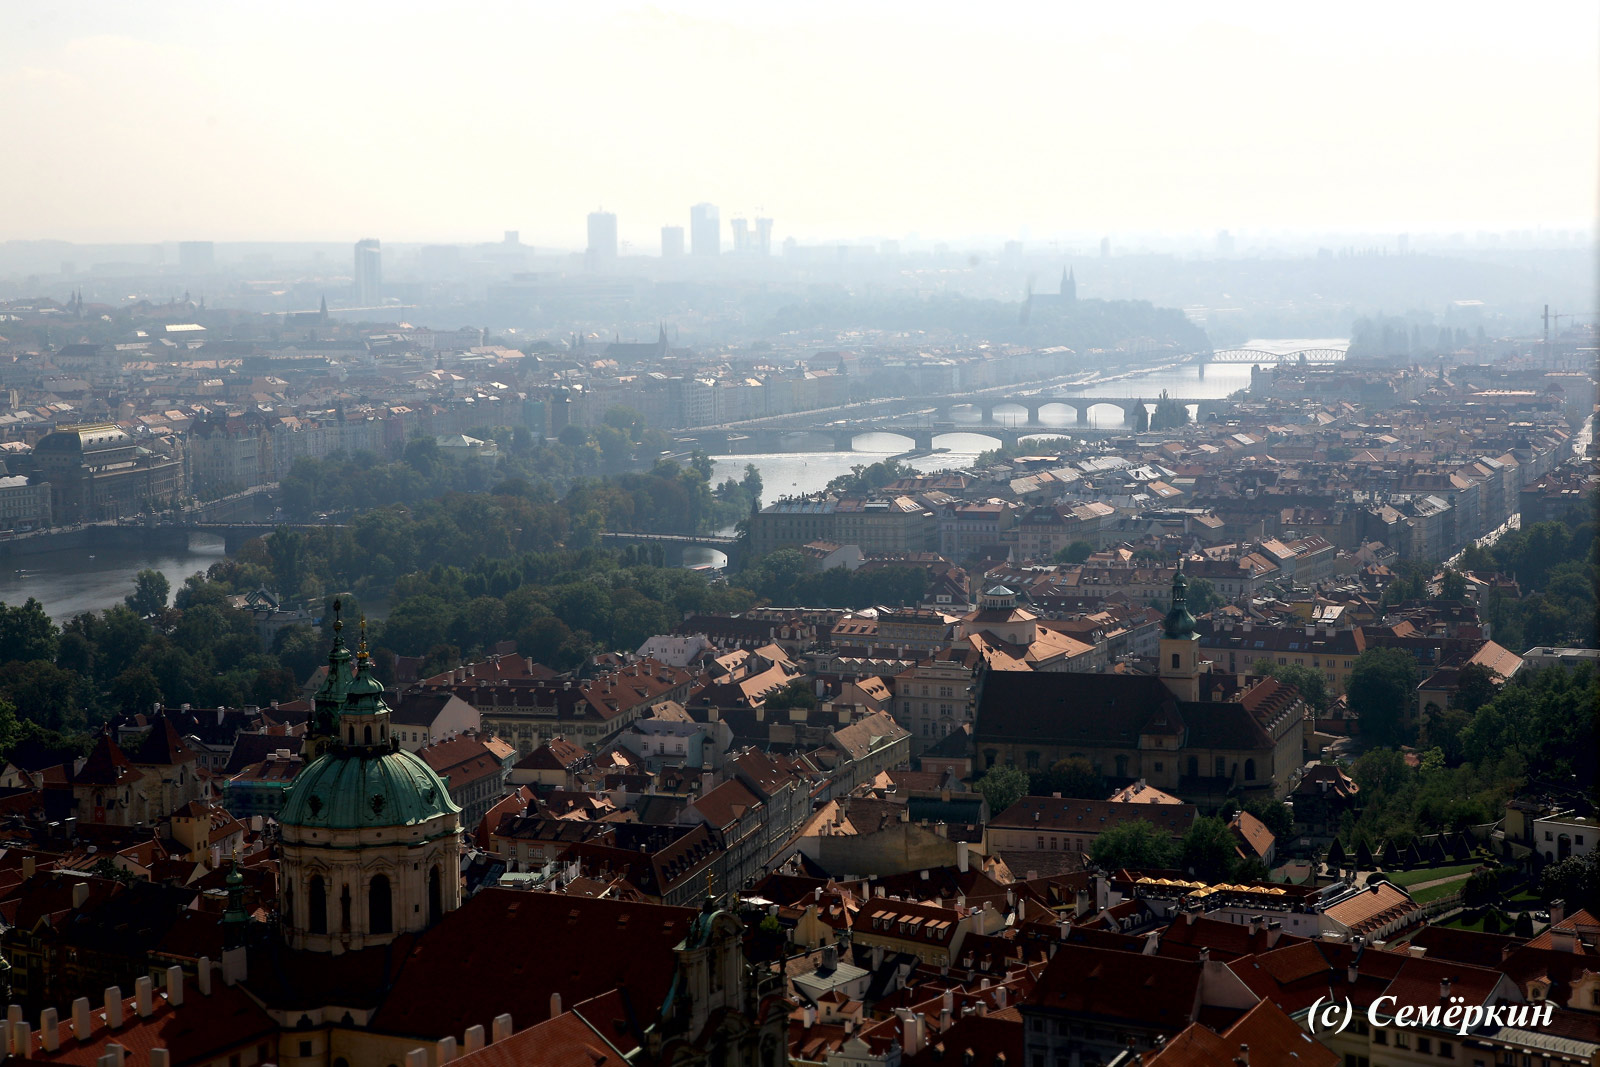  Панорамы Праги с башни собора Святого Вита - Парад пражских мостов